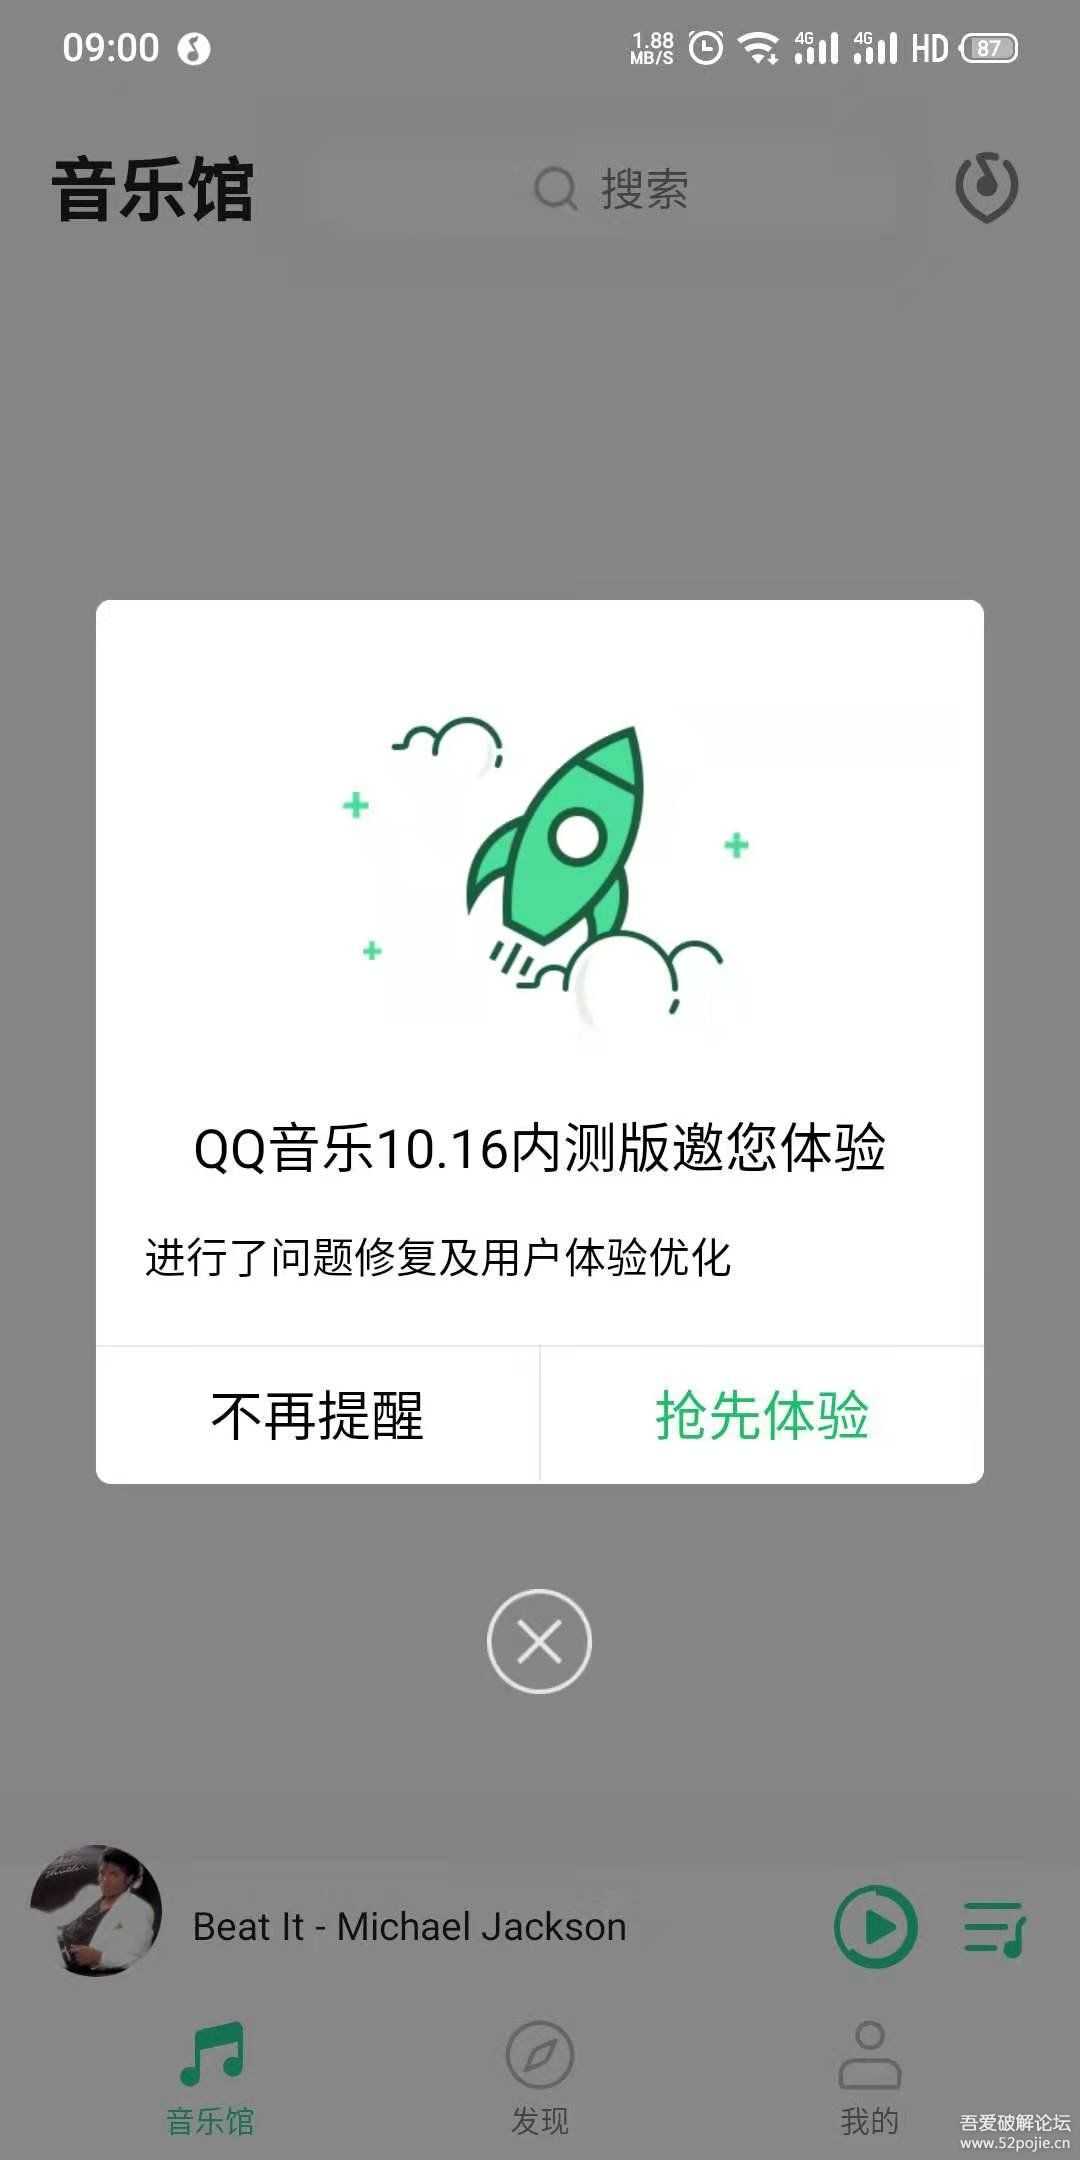 【分享】QQ音乐官方内测版 v9.0.0.7 和官方简洁版 V1.0.1 可共存